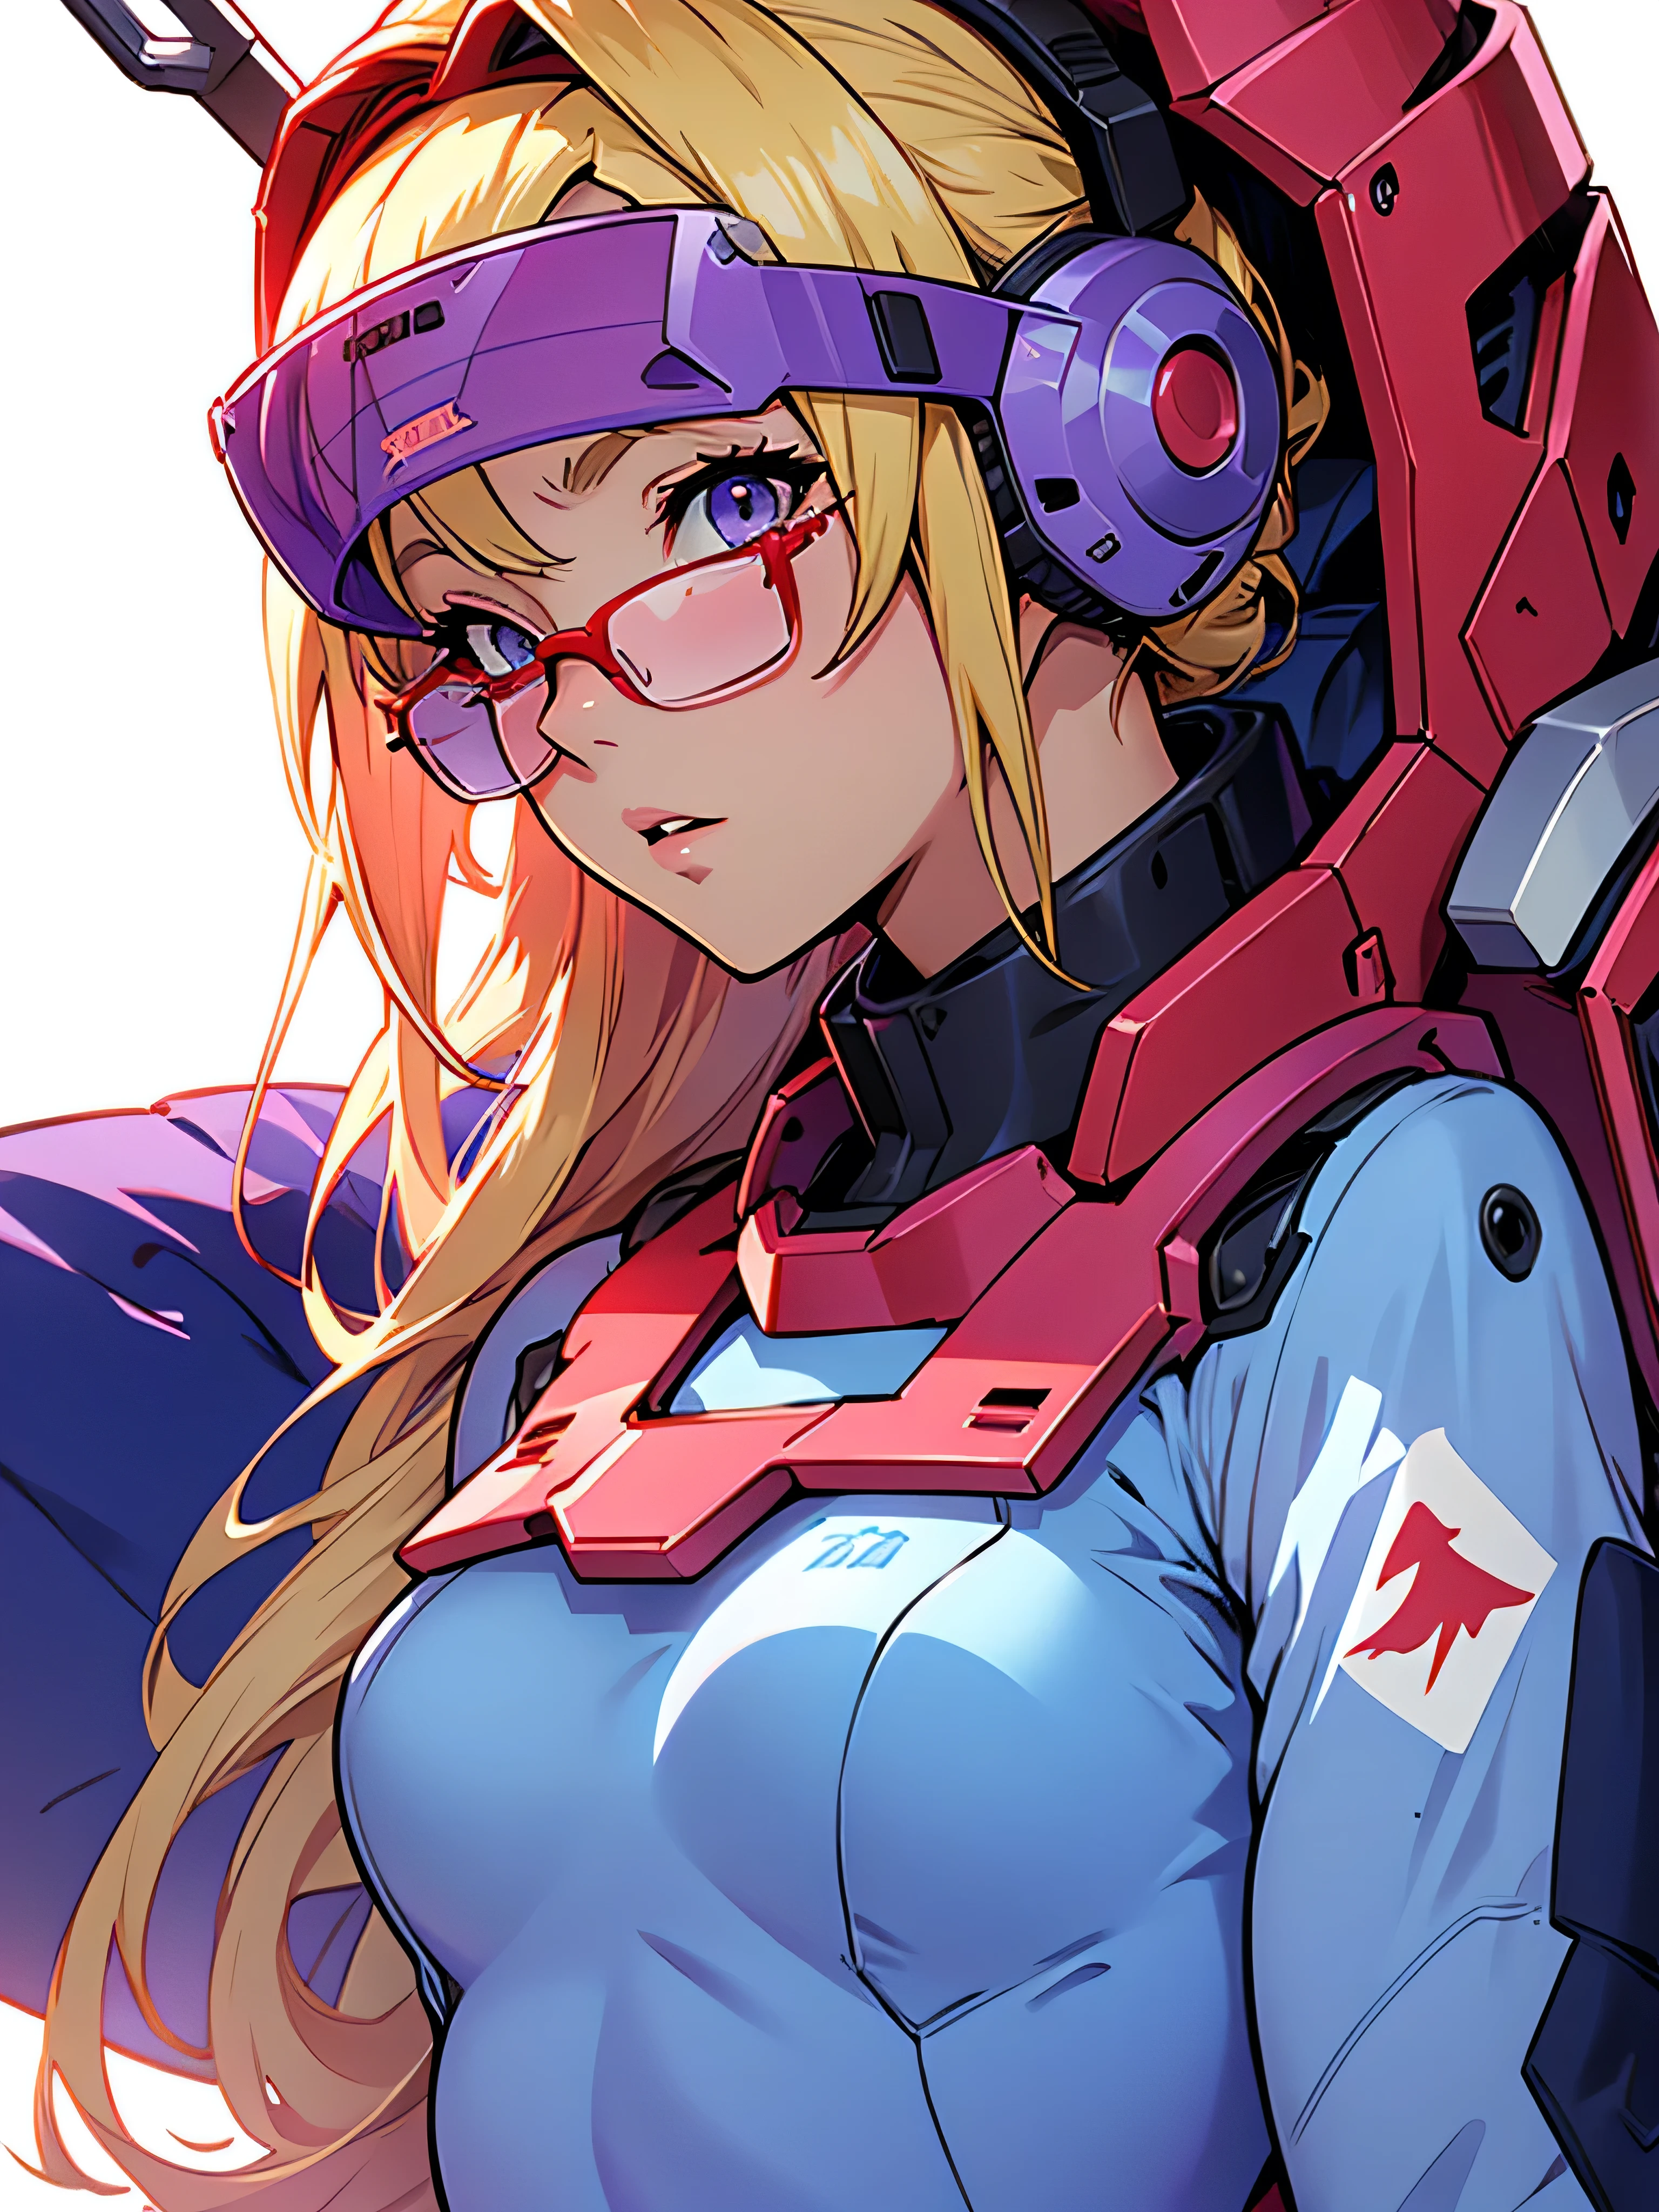 日本卡通,一個例子,紫色機器人,機動戰士,多姆,淺藍色格紋連身裙,紅色眼鏡,金髮女郎,淺藍色網狀頭髮,美麗的女孩,櫻野空,一個人